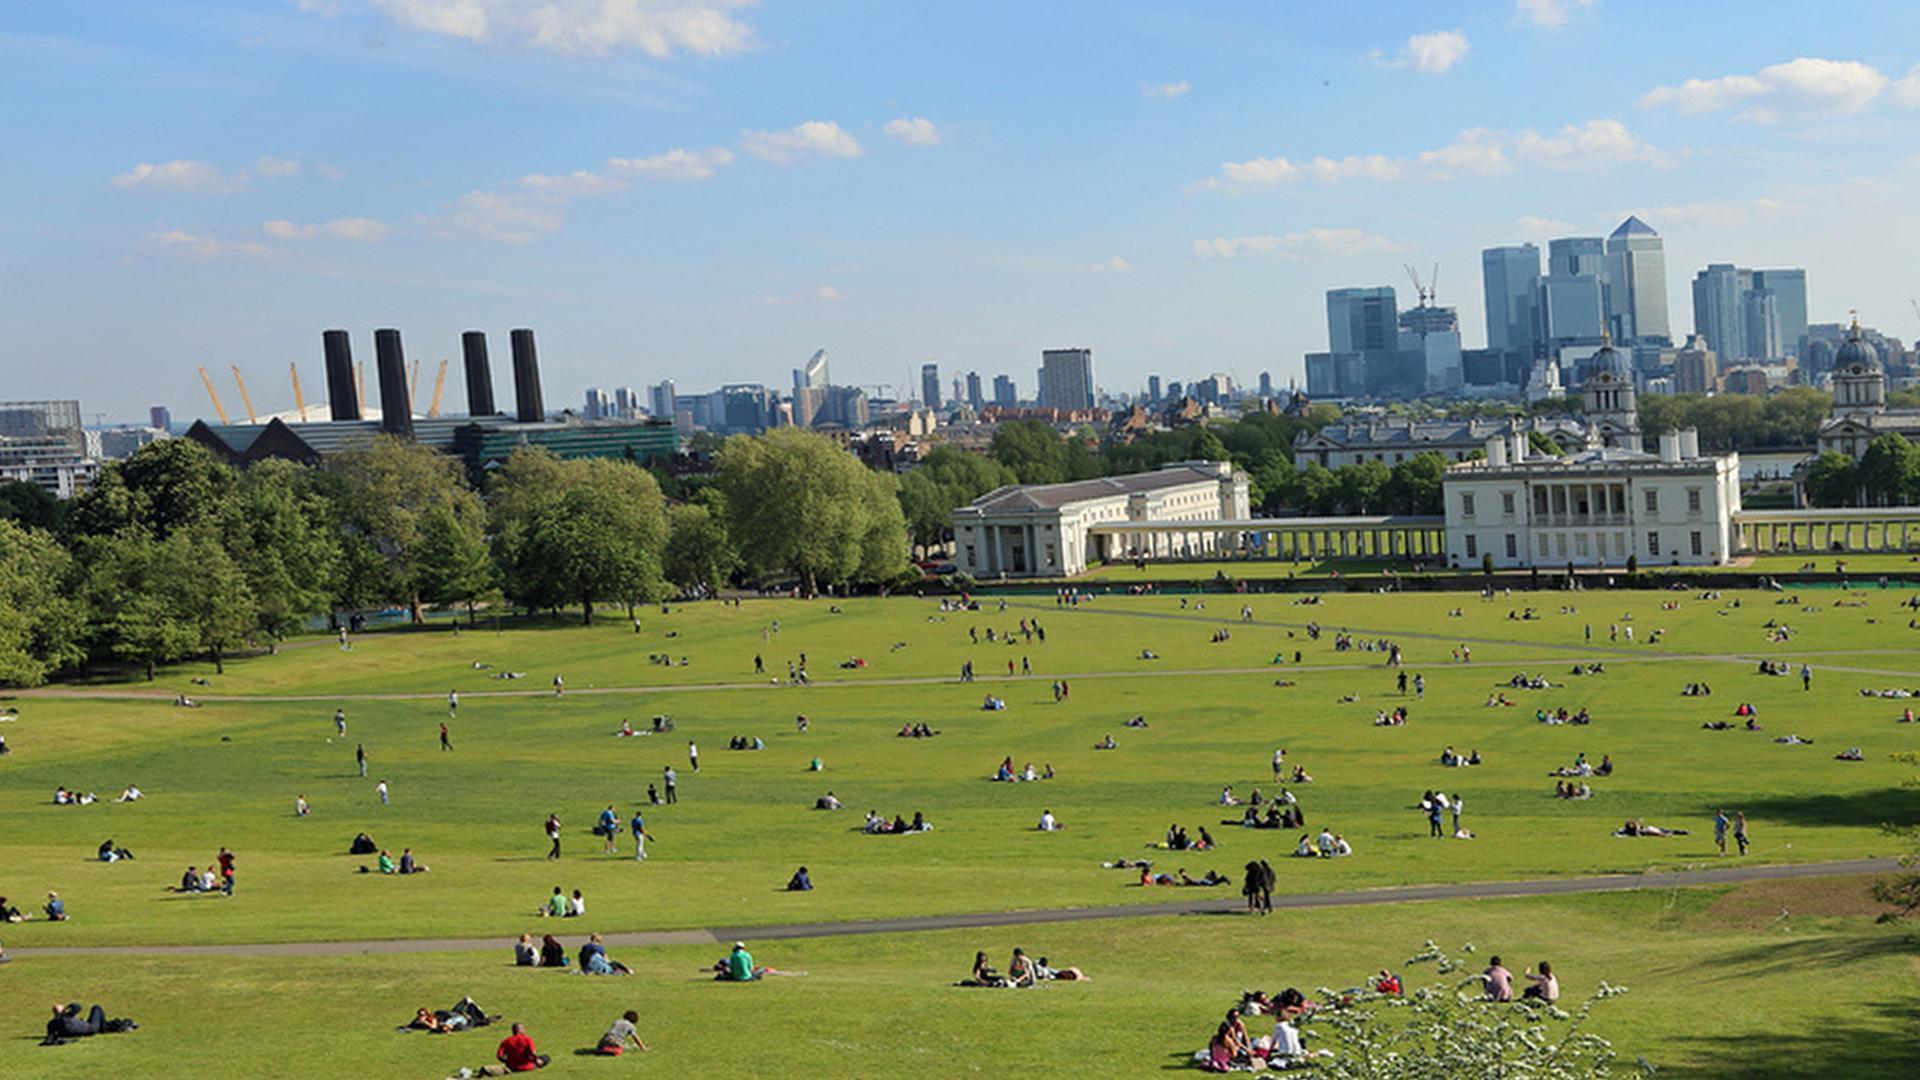 Greenwich Park Information